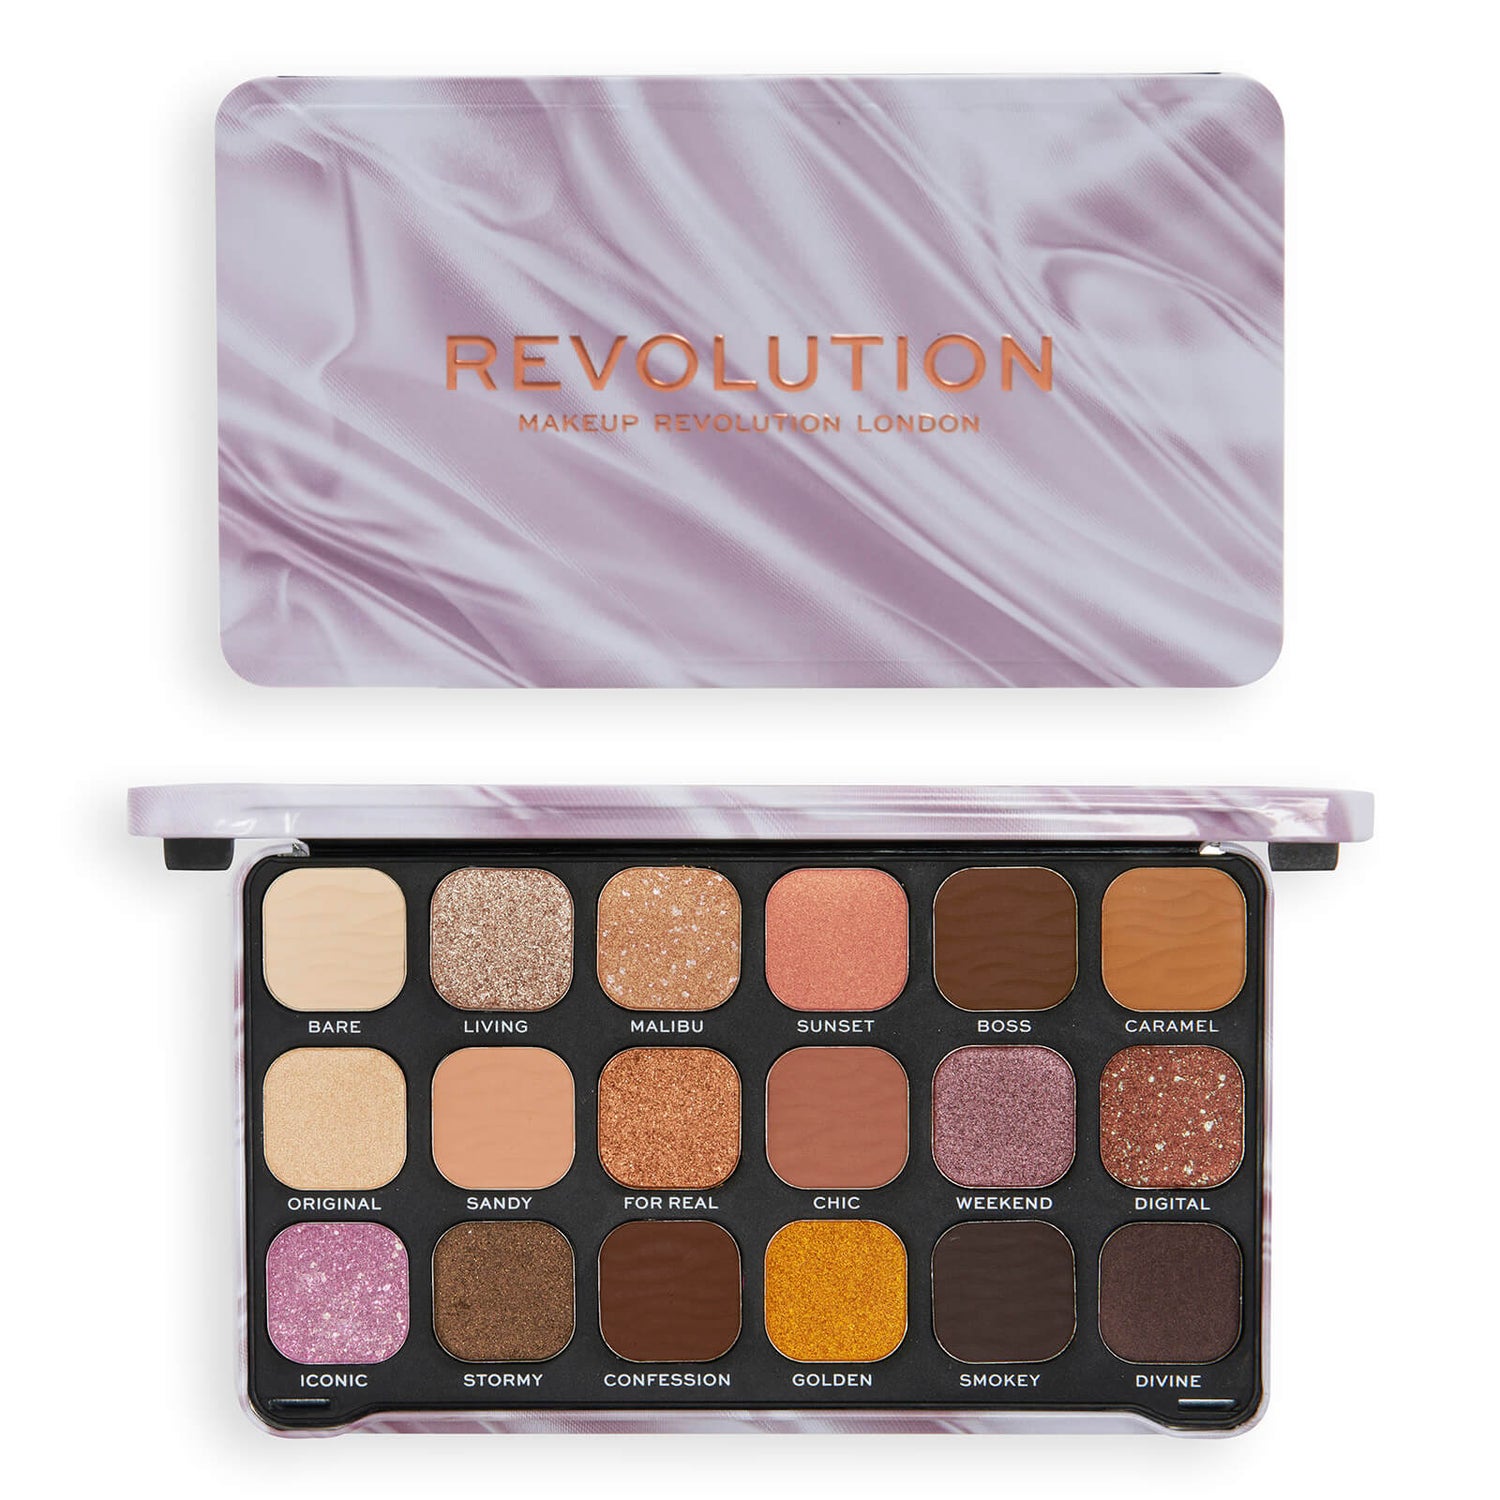 Makeup Revolution Maxi Reloaded Palette - Palette ombretti, 45 tonalità